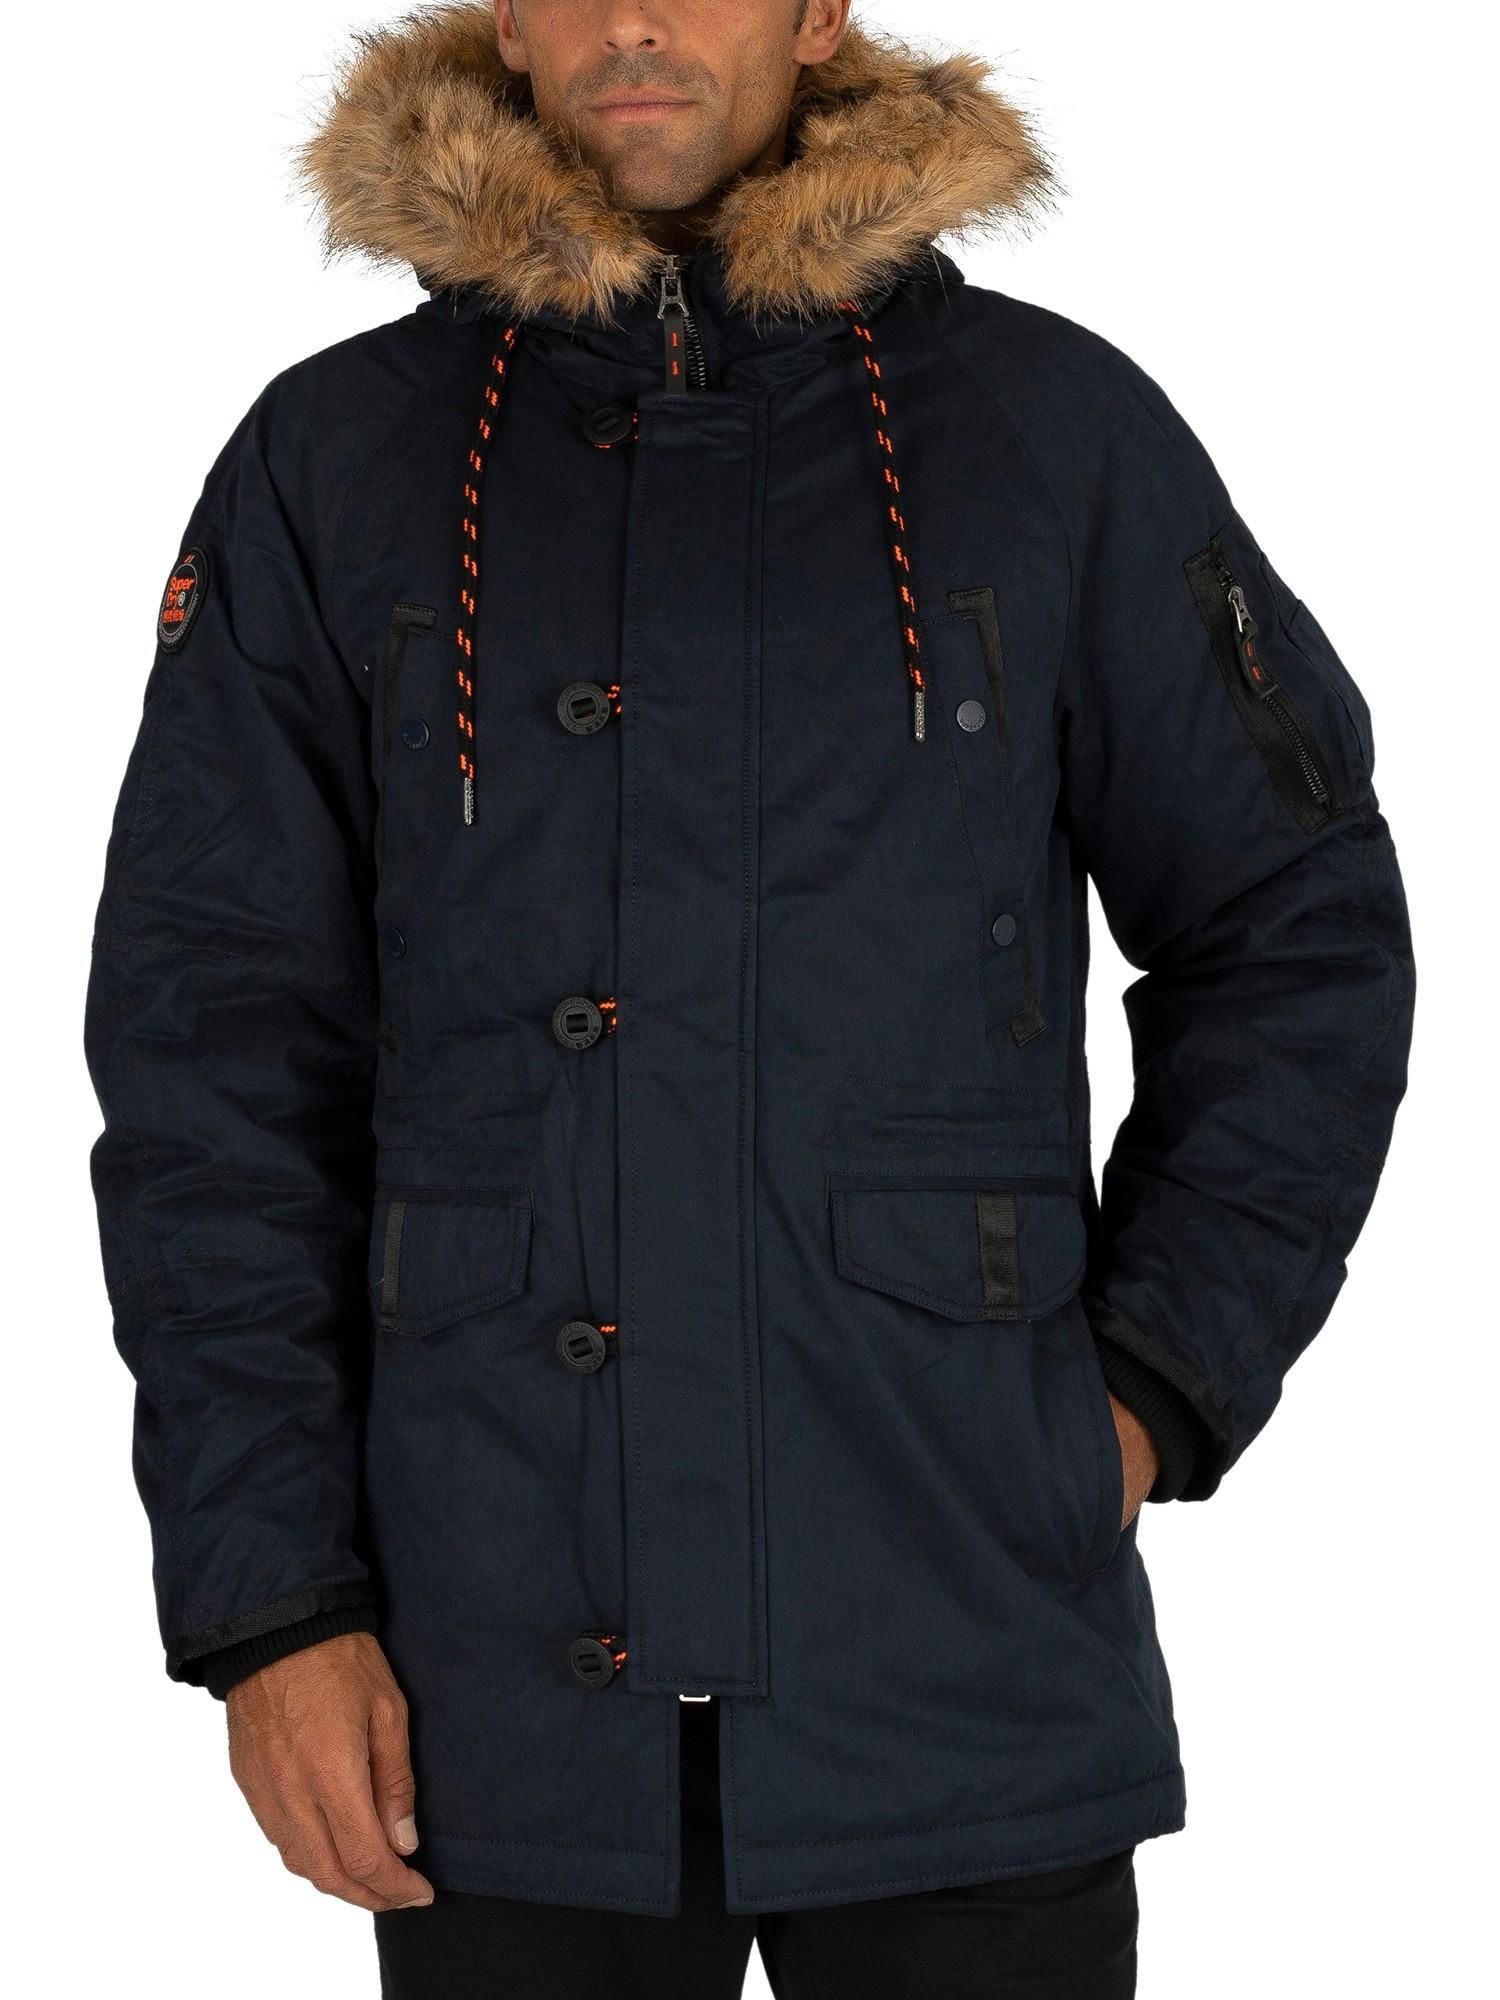 Superdry Sdx Parka Jacket in Deep Navy (Blue) for Men - Save 54% - Lyst